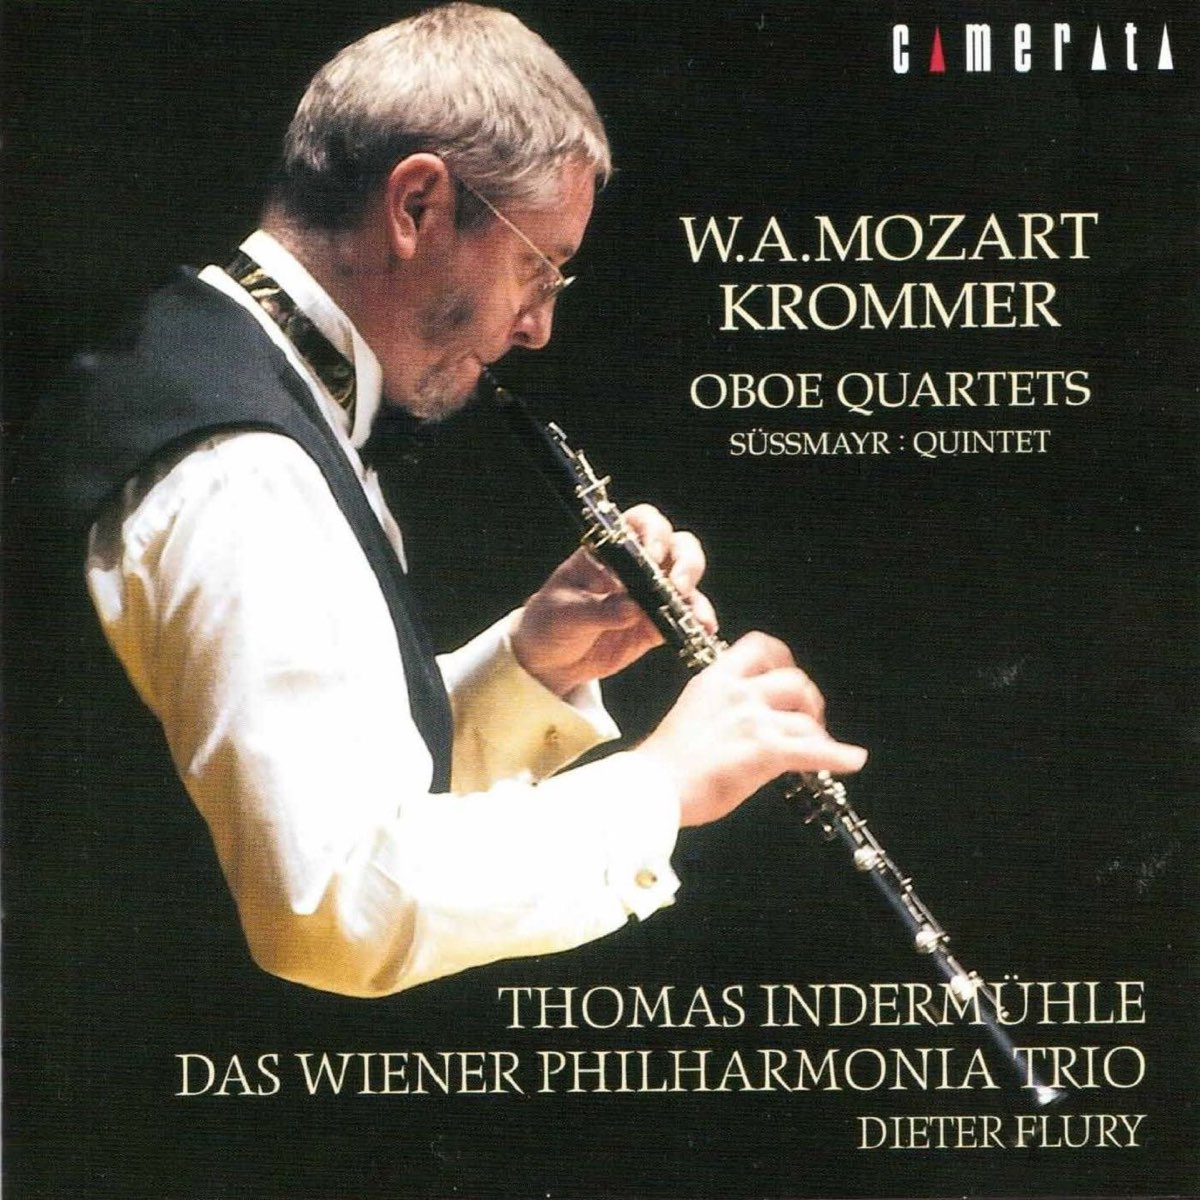 Mozart - Krommer: Oboe Quartets》- Thomas Indermühle & Das Wiener ...